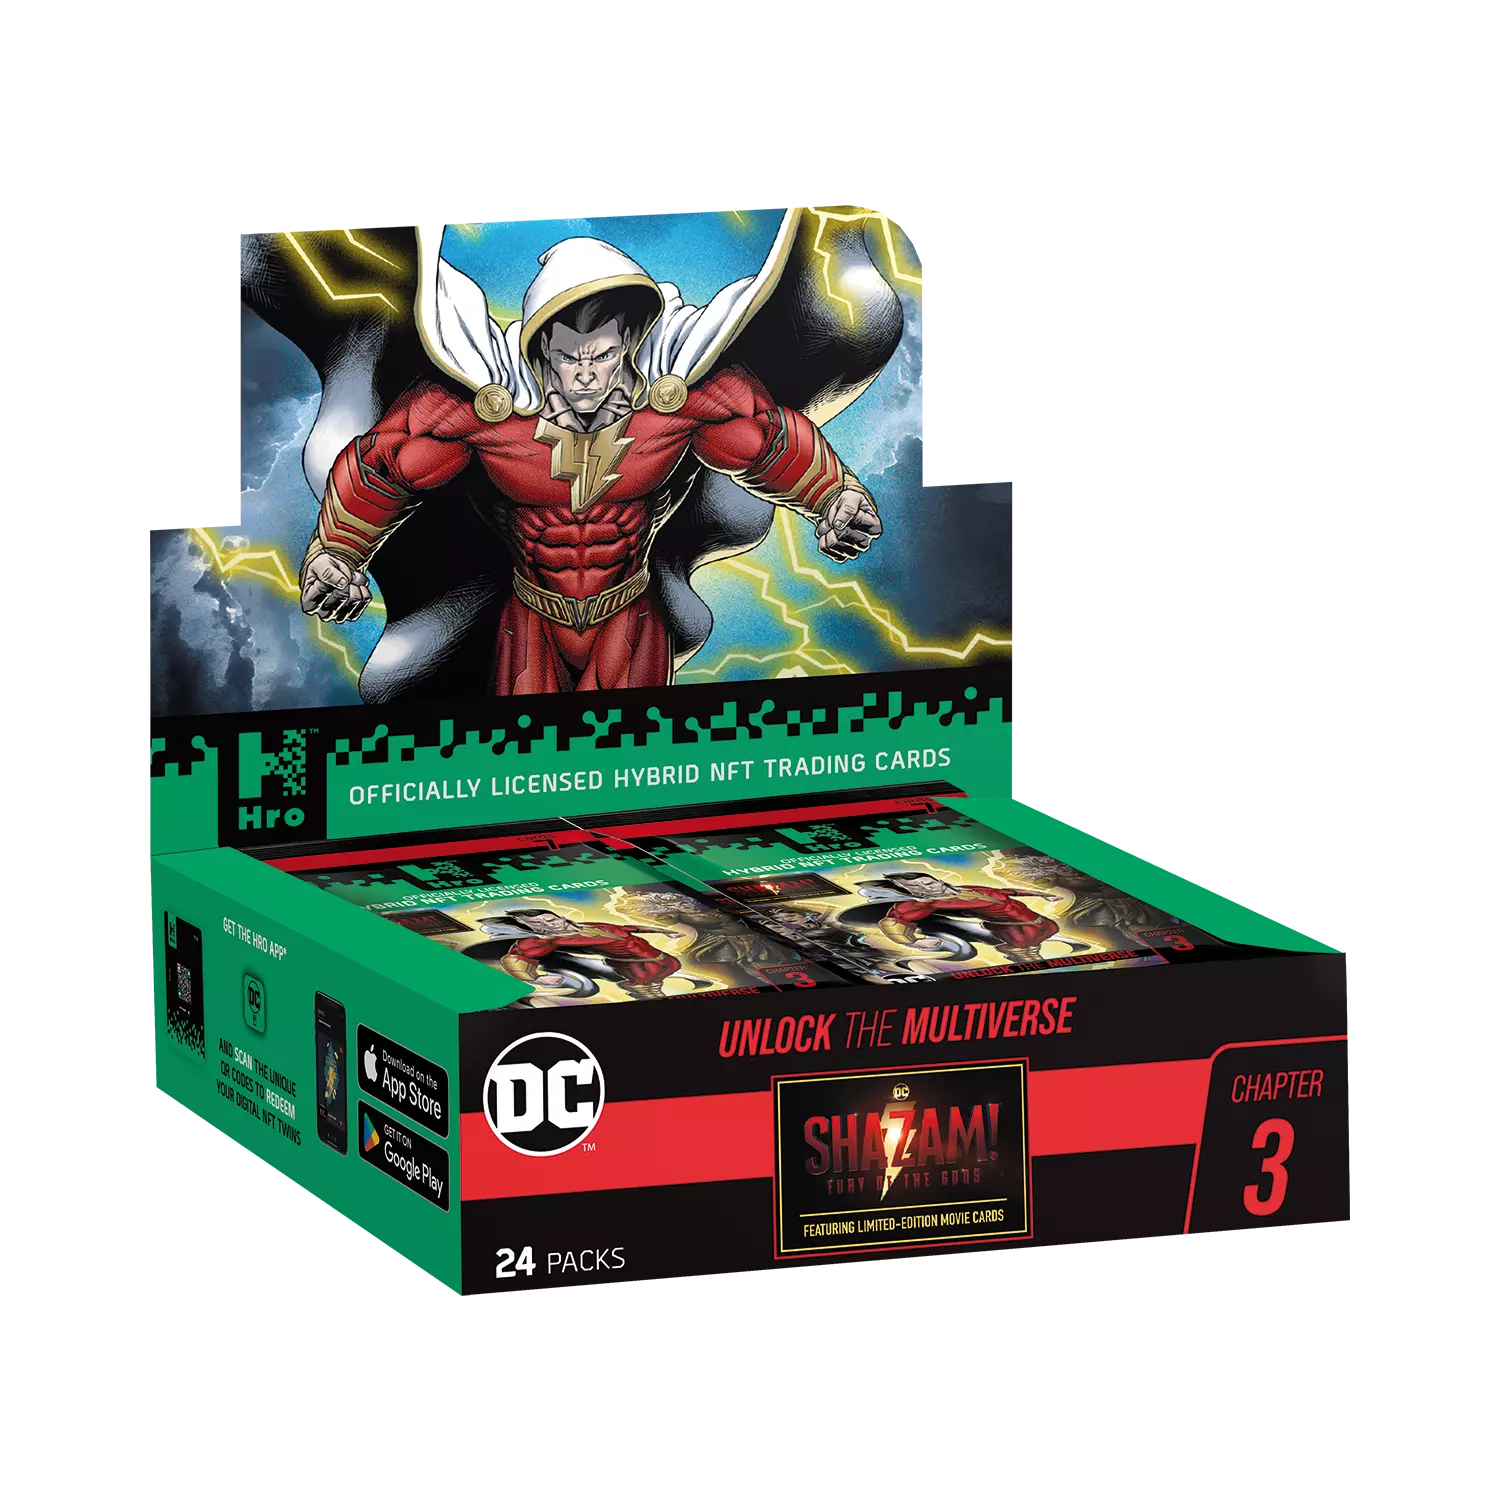 Eine Hro DC Chapter 3 24 pack Schachtel steht mit sichtbarer Vorderseite vor weißem Hintergrund.